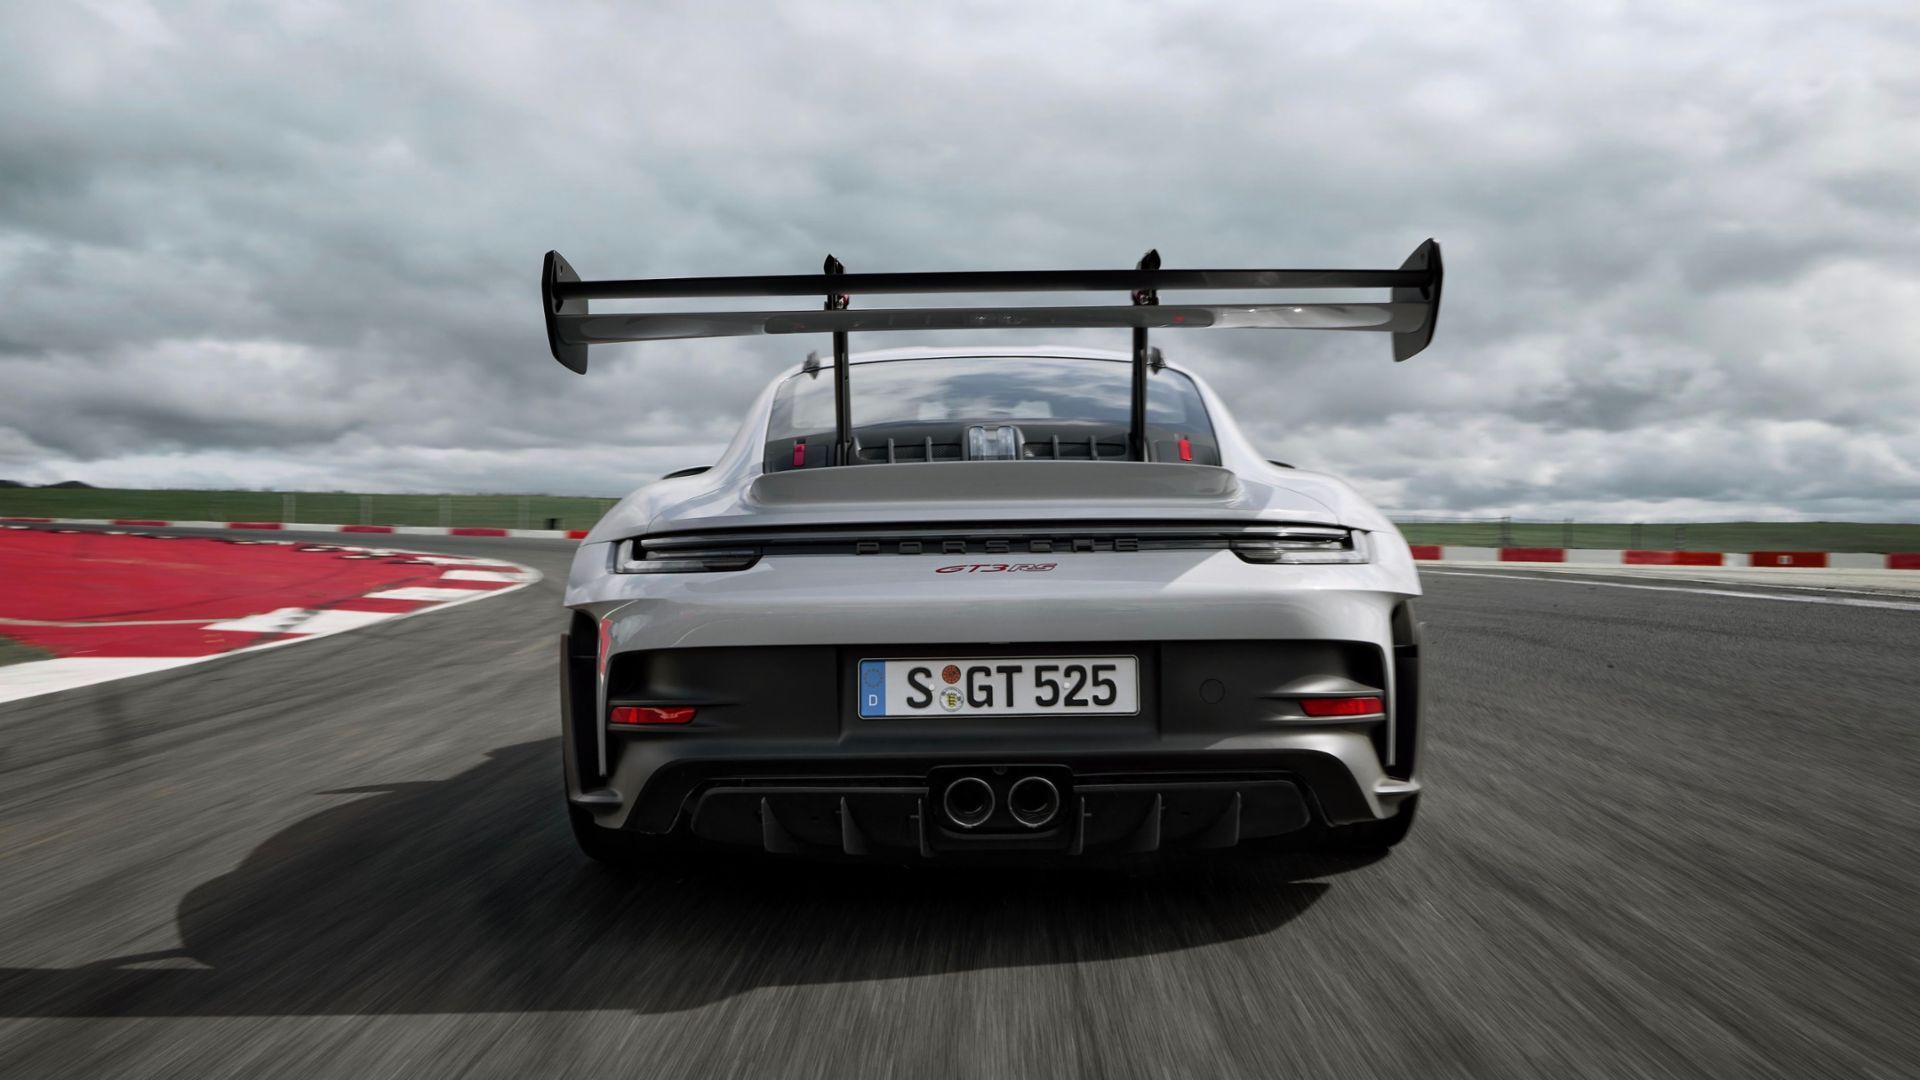 The New Porsche 911 GT3 RS